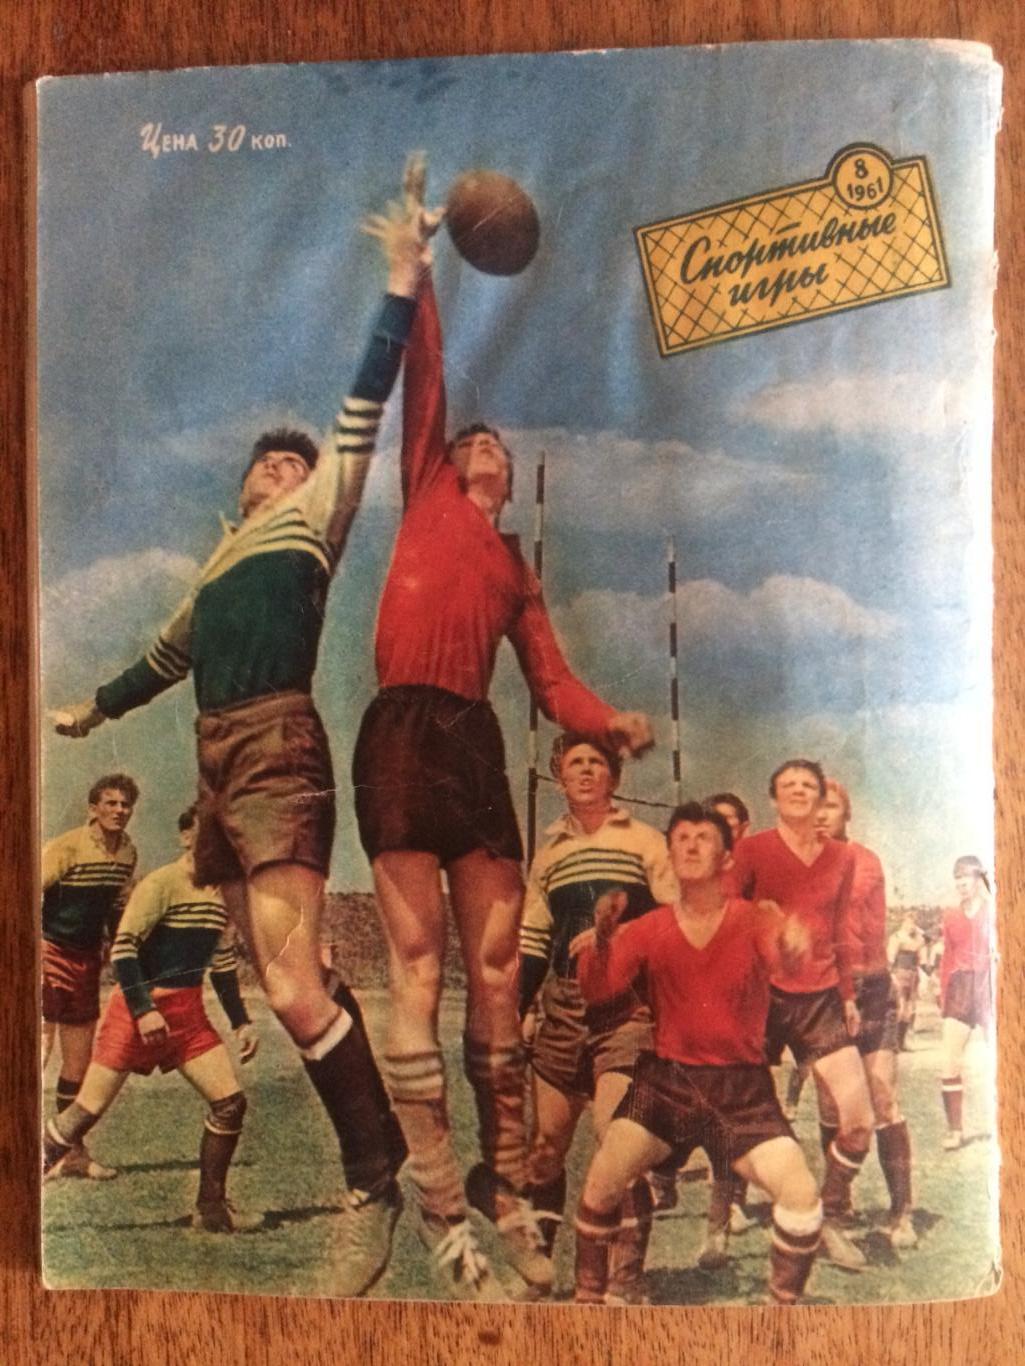 Журнал Спортивные игры №8 1961 2